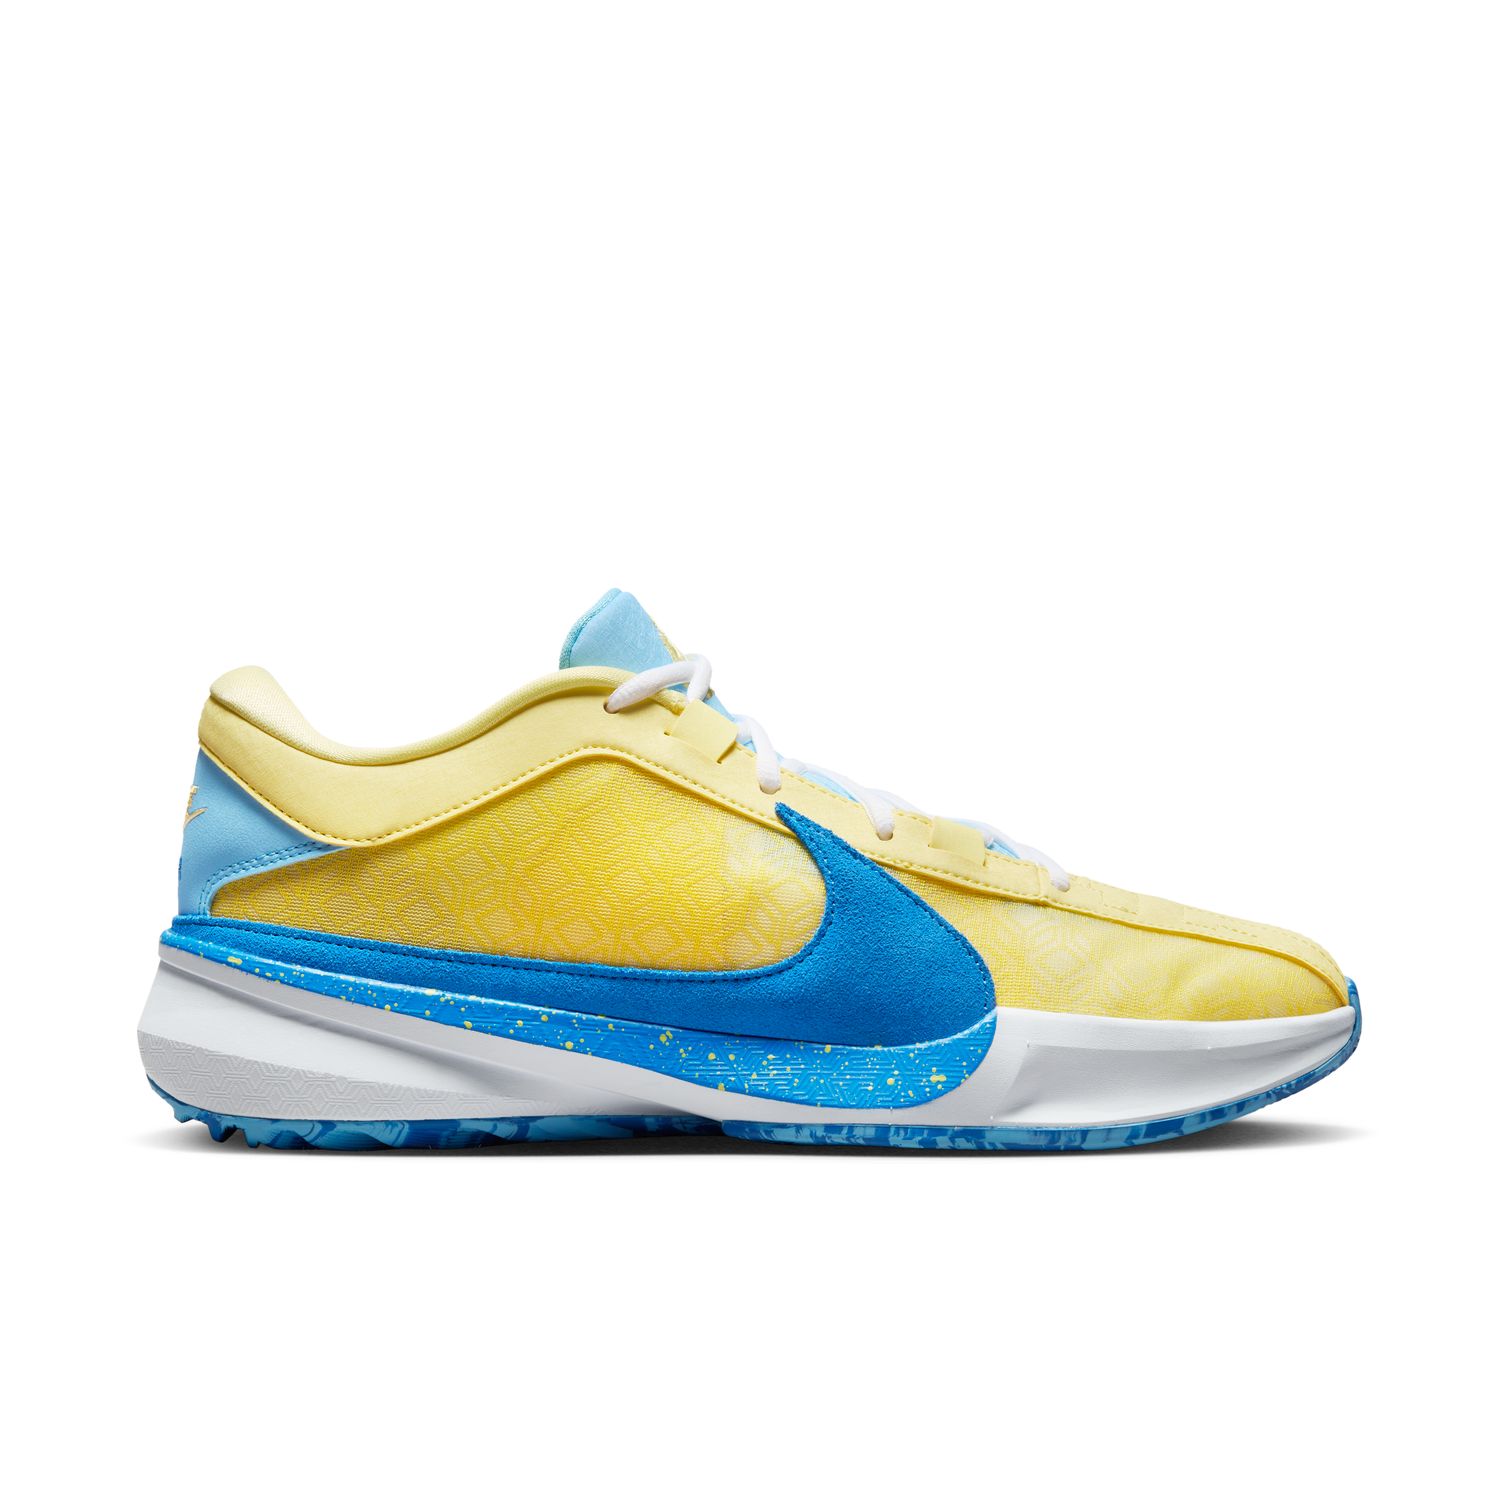 Nike Giannis Freak 5 "Soft Yellow" - Pánske - Tenisky Nike - Žlté - DX4985-700 - Veľkosť: 44.5